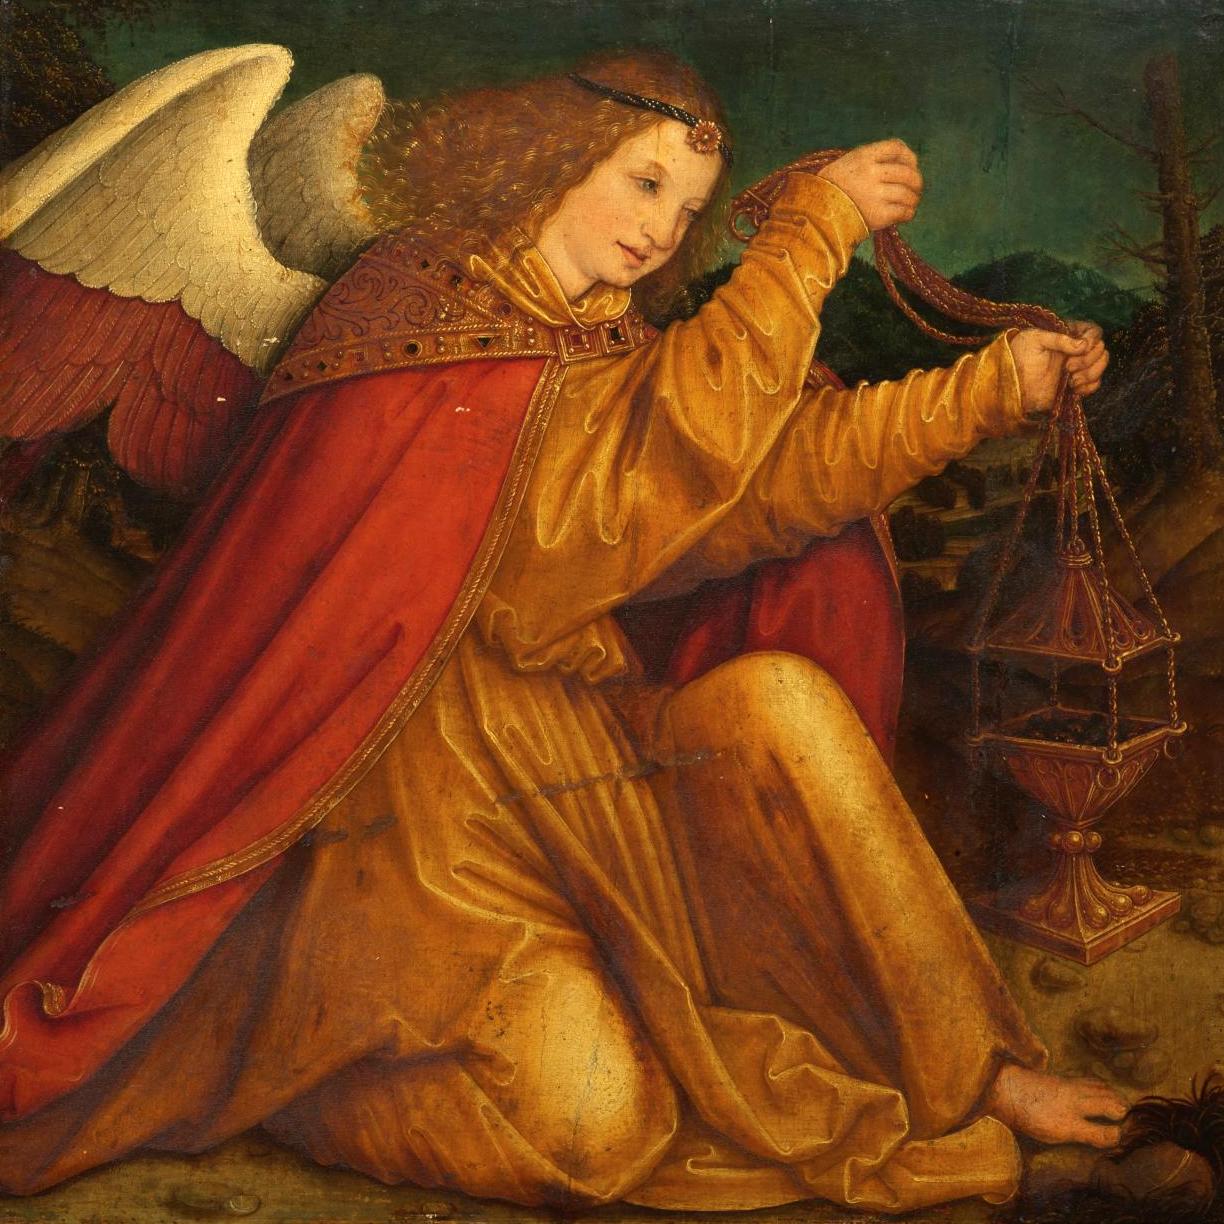 An Unusual Angel by Bernhard Strigel - Pre-sale